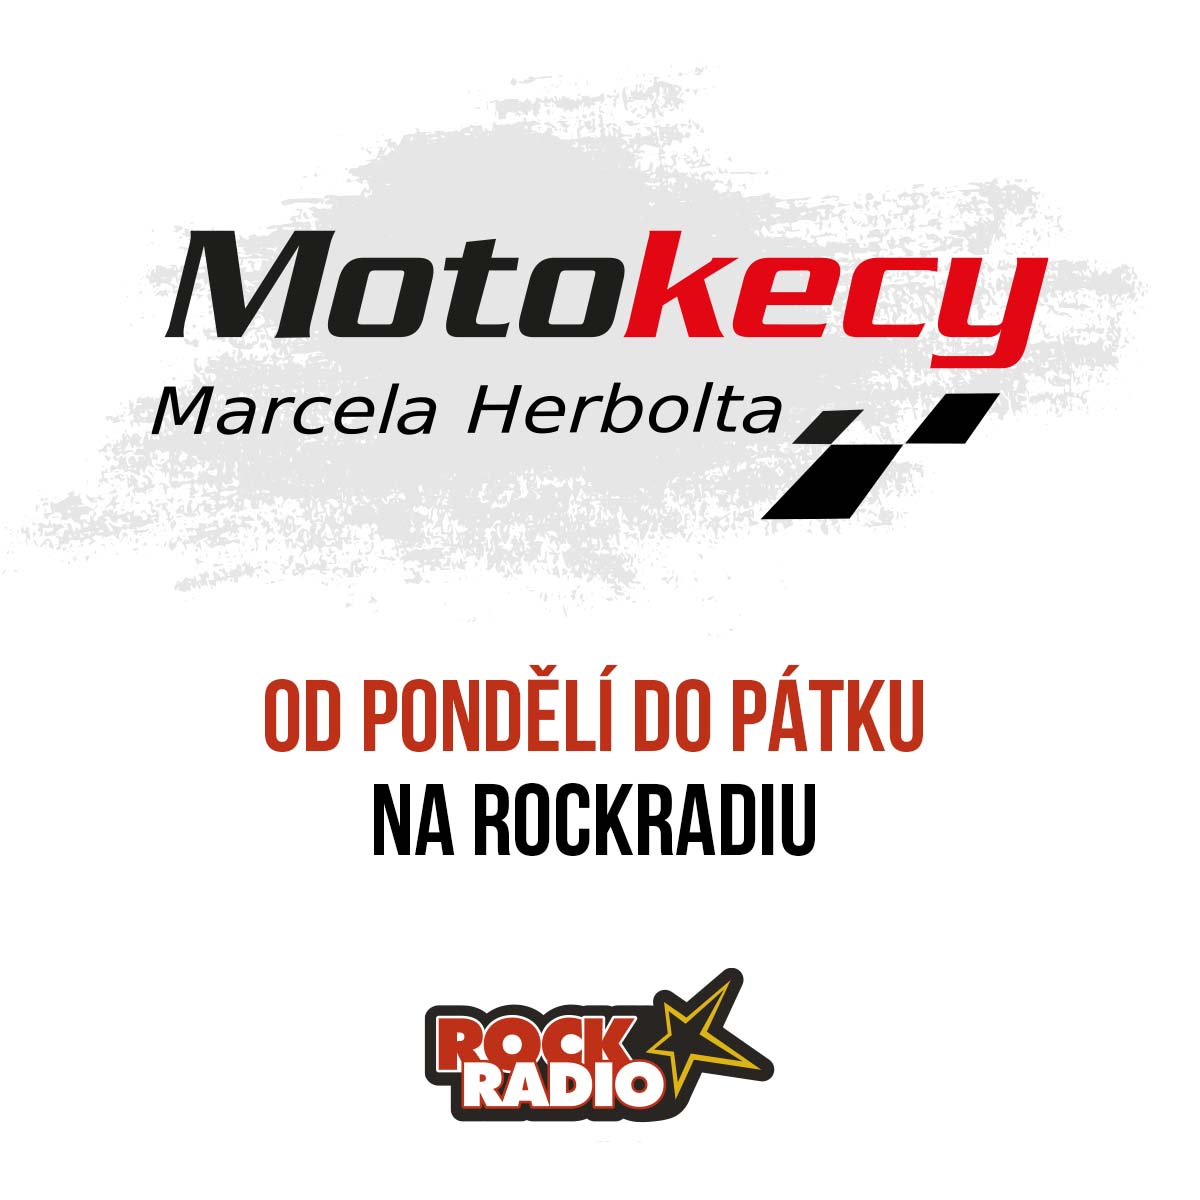 Motokecy Marcela Herbolta na čtvrtek 12. října